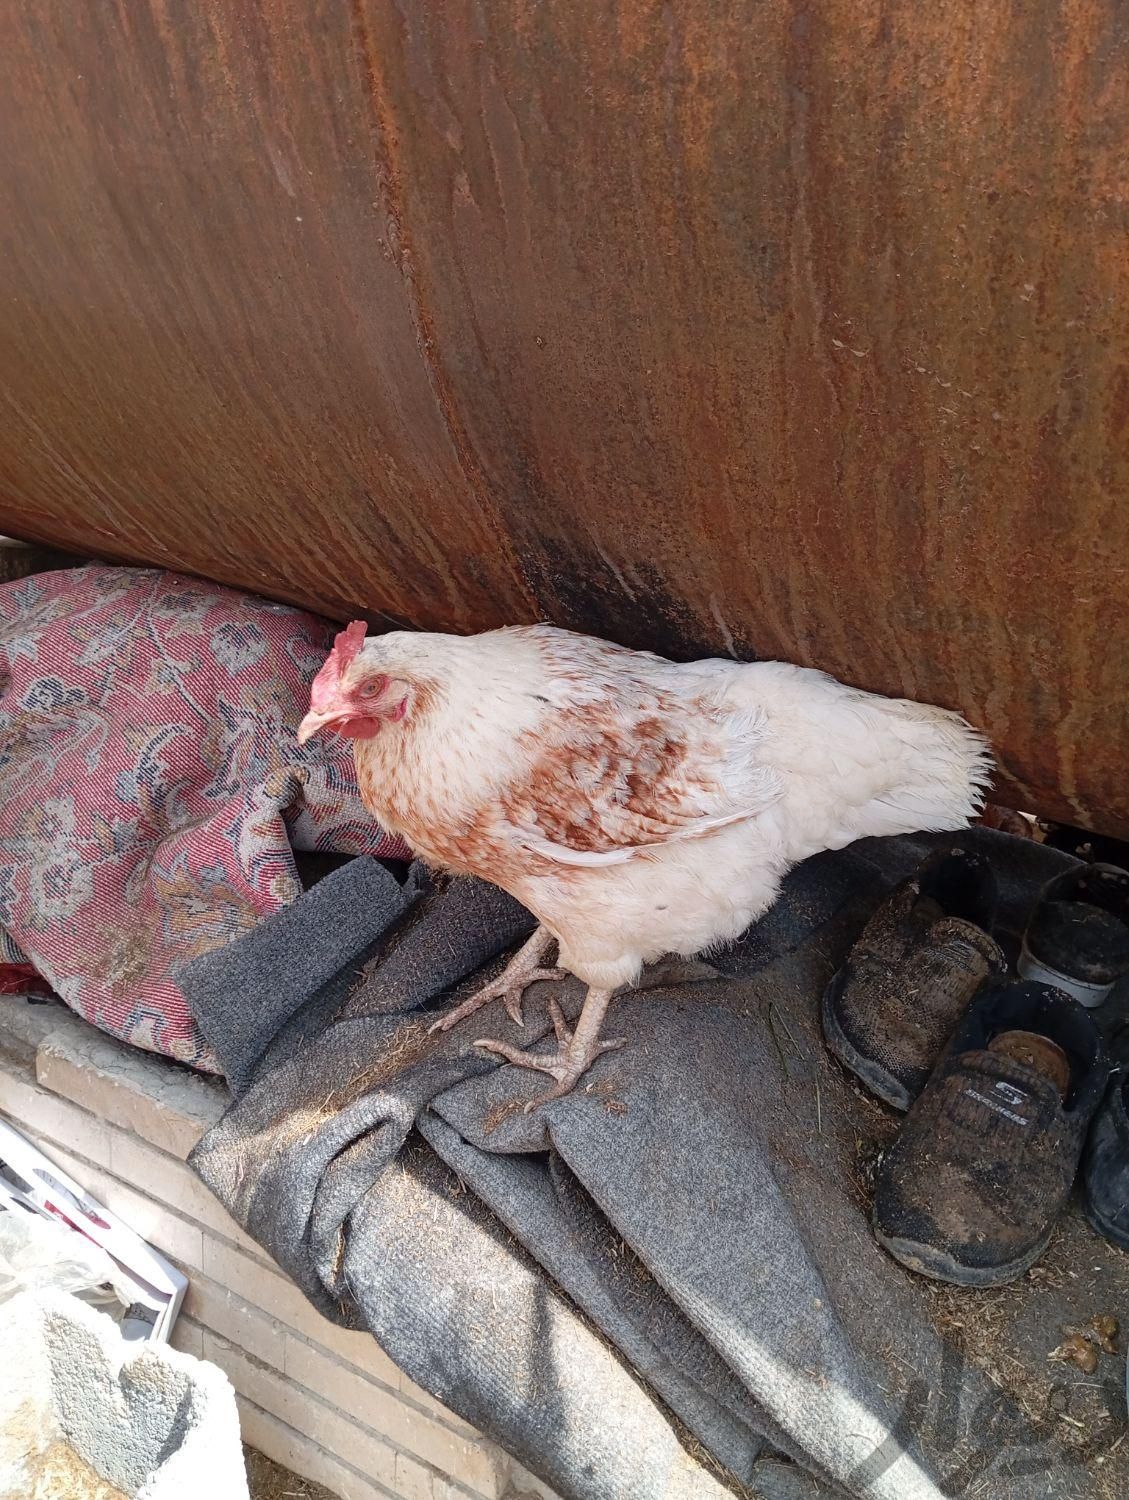 مرغ تخمگذار|حیوانات مزرعه|اصفهان, زینبیه|دیوار